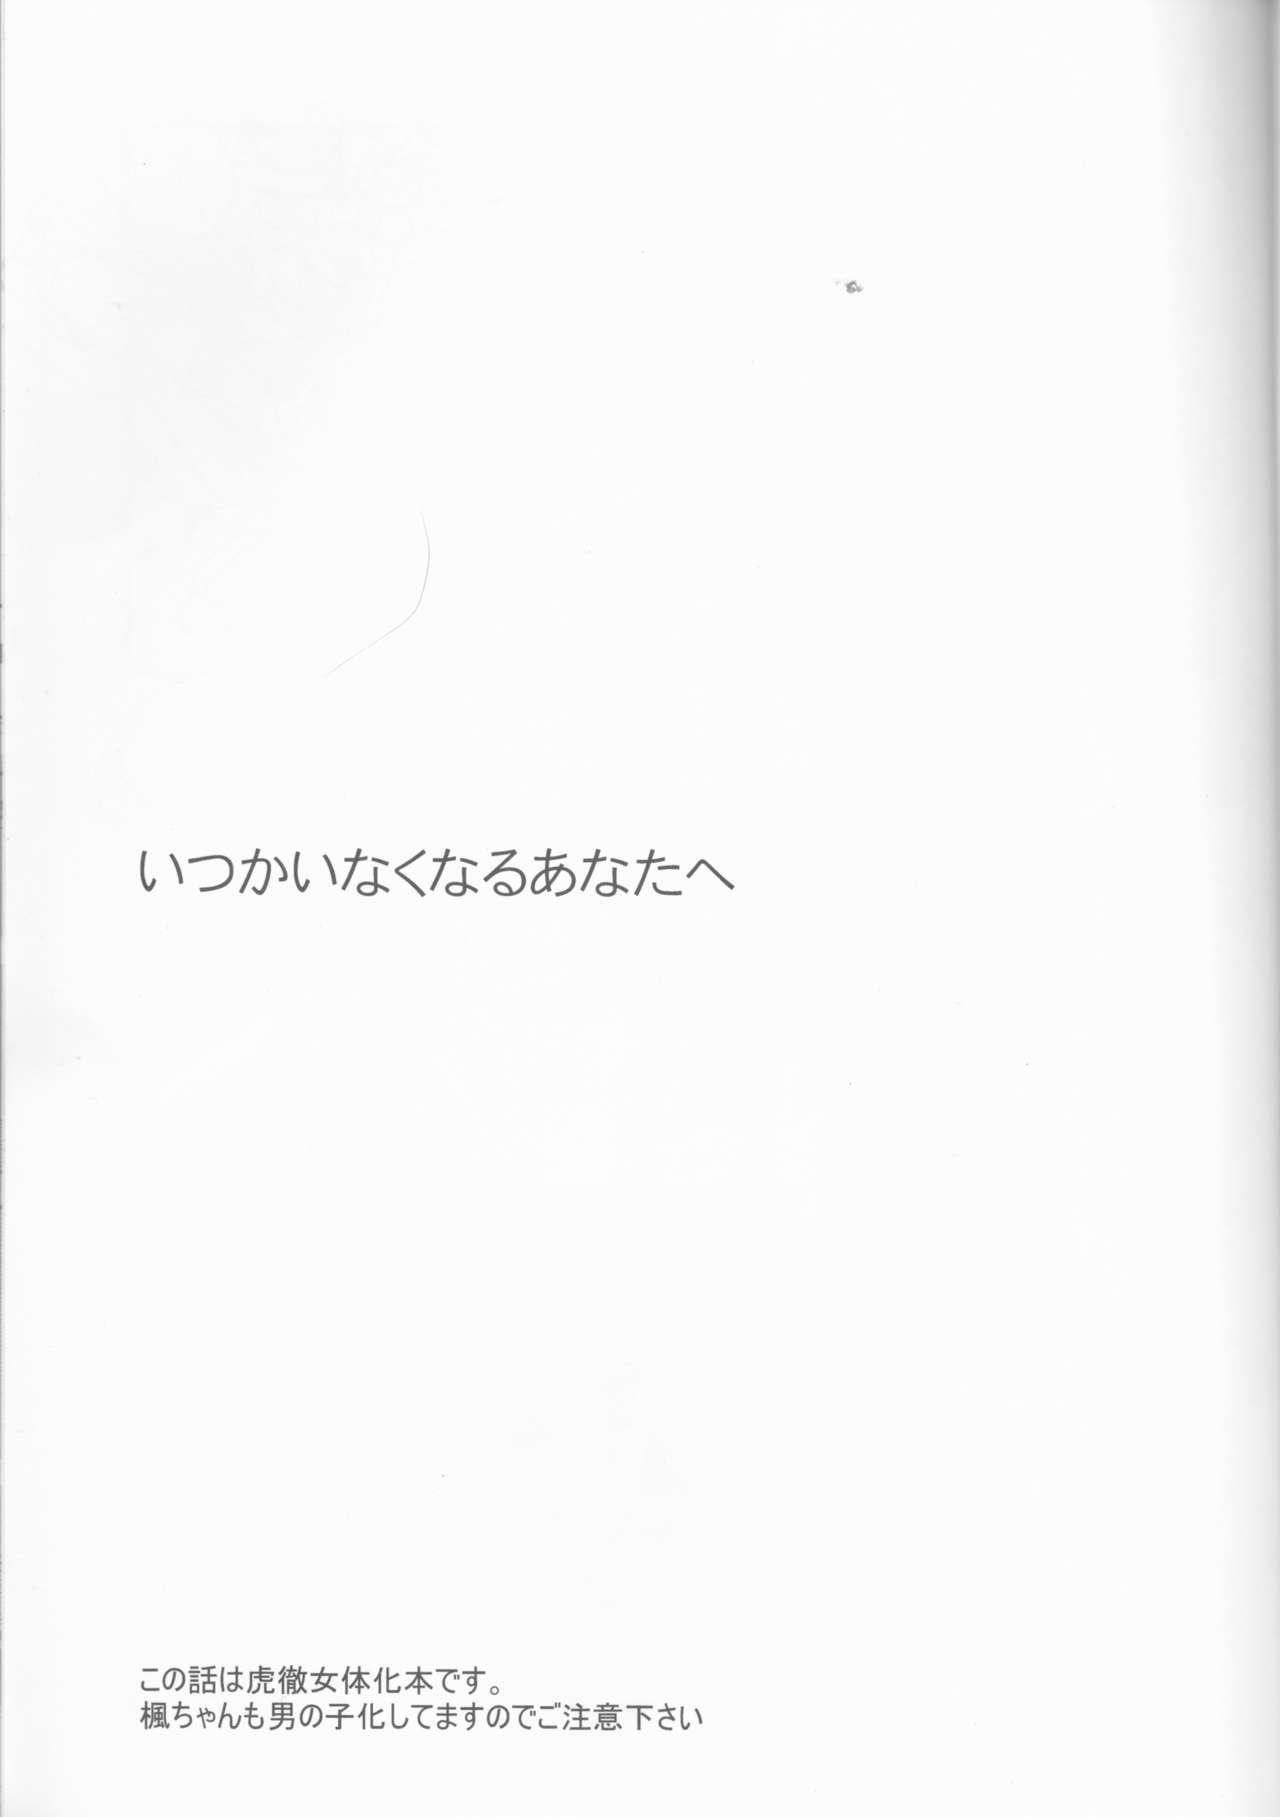 Naija Itsuka wa inaku naru kimi e - Tiger and bunny Creamy - Page 2